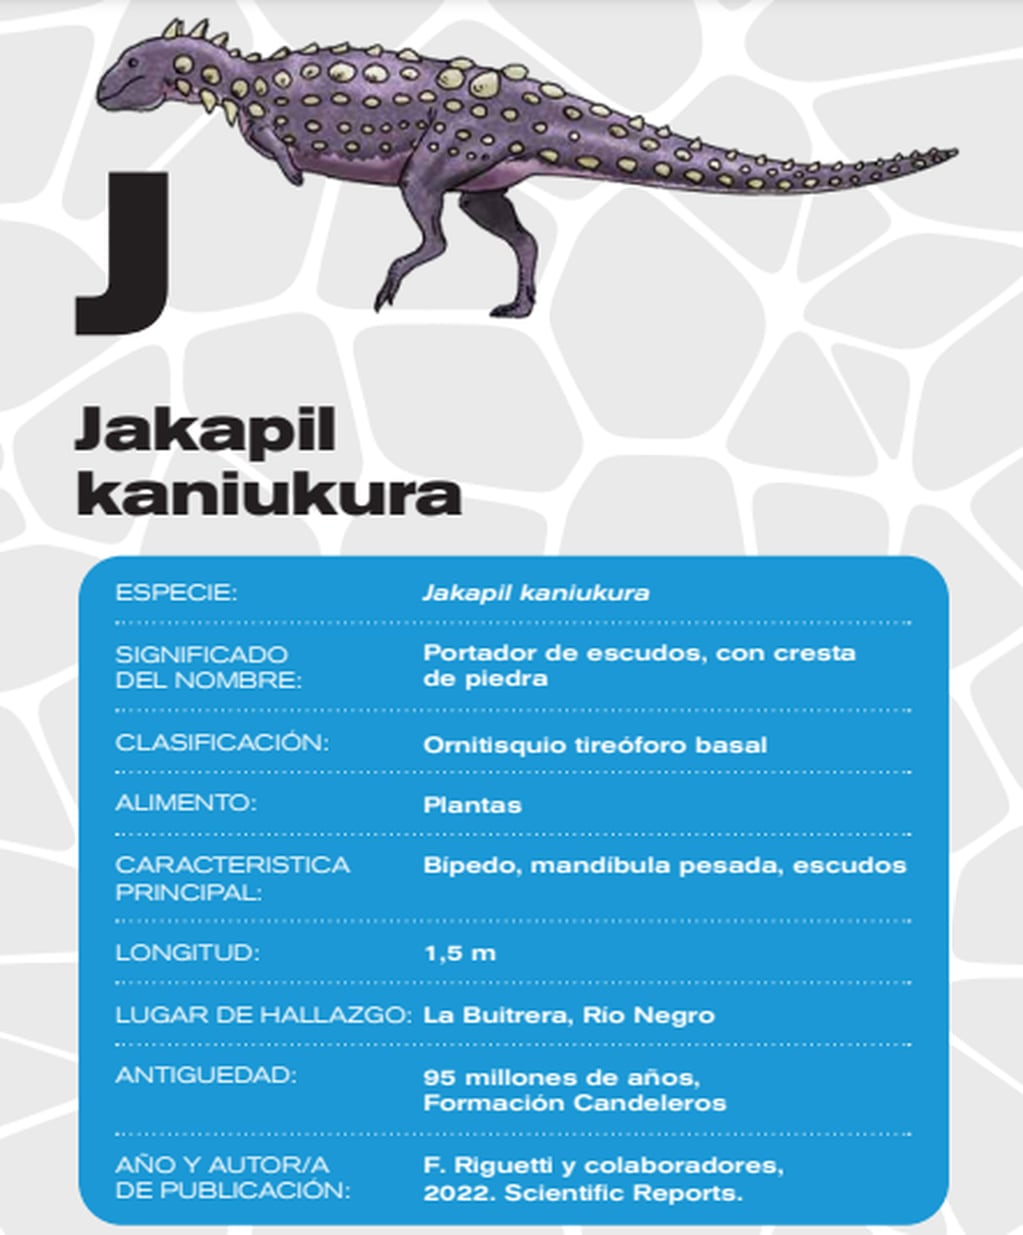 El Jakapil kaniukura es el último dinosaurio descubierto en Argentina.